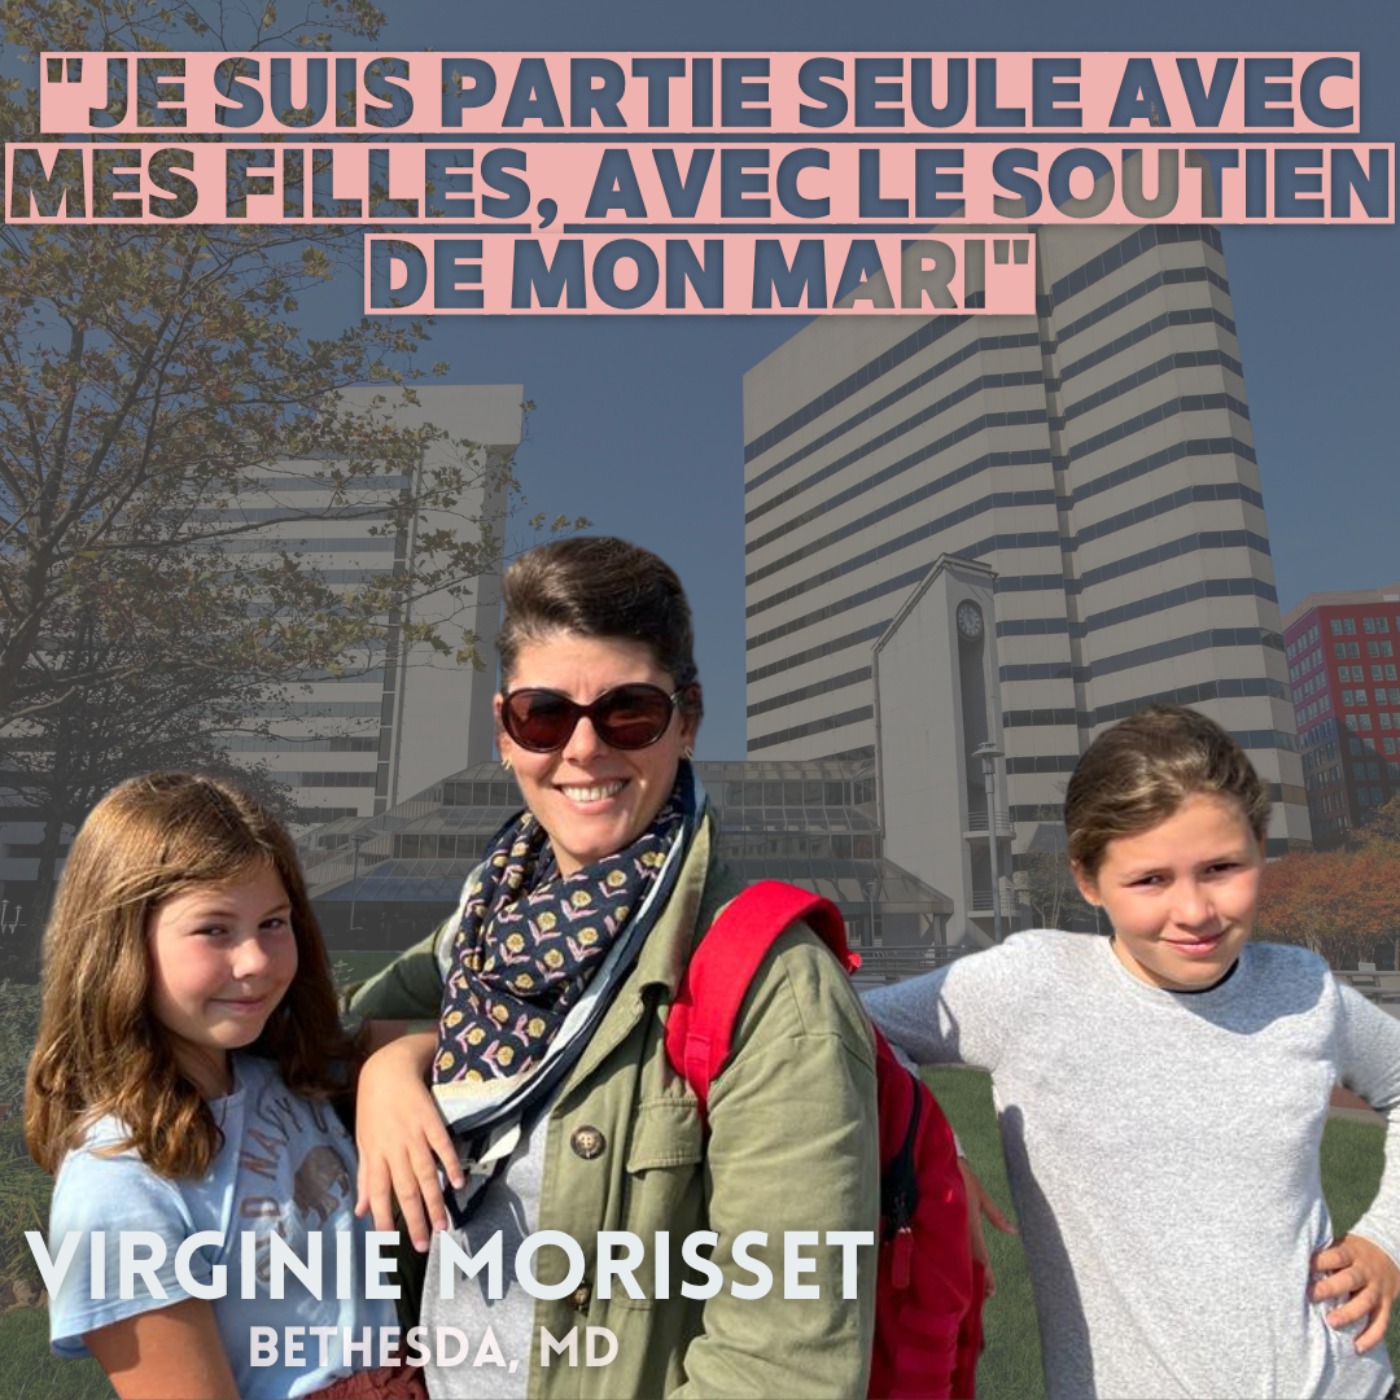 Virginie Morisset : Partir avec ses enfants mais sans son mari